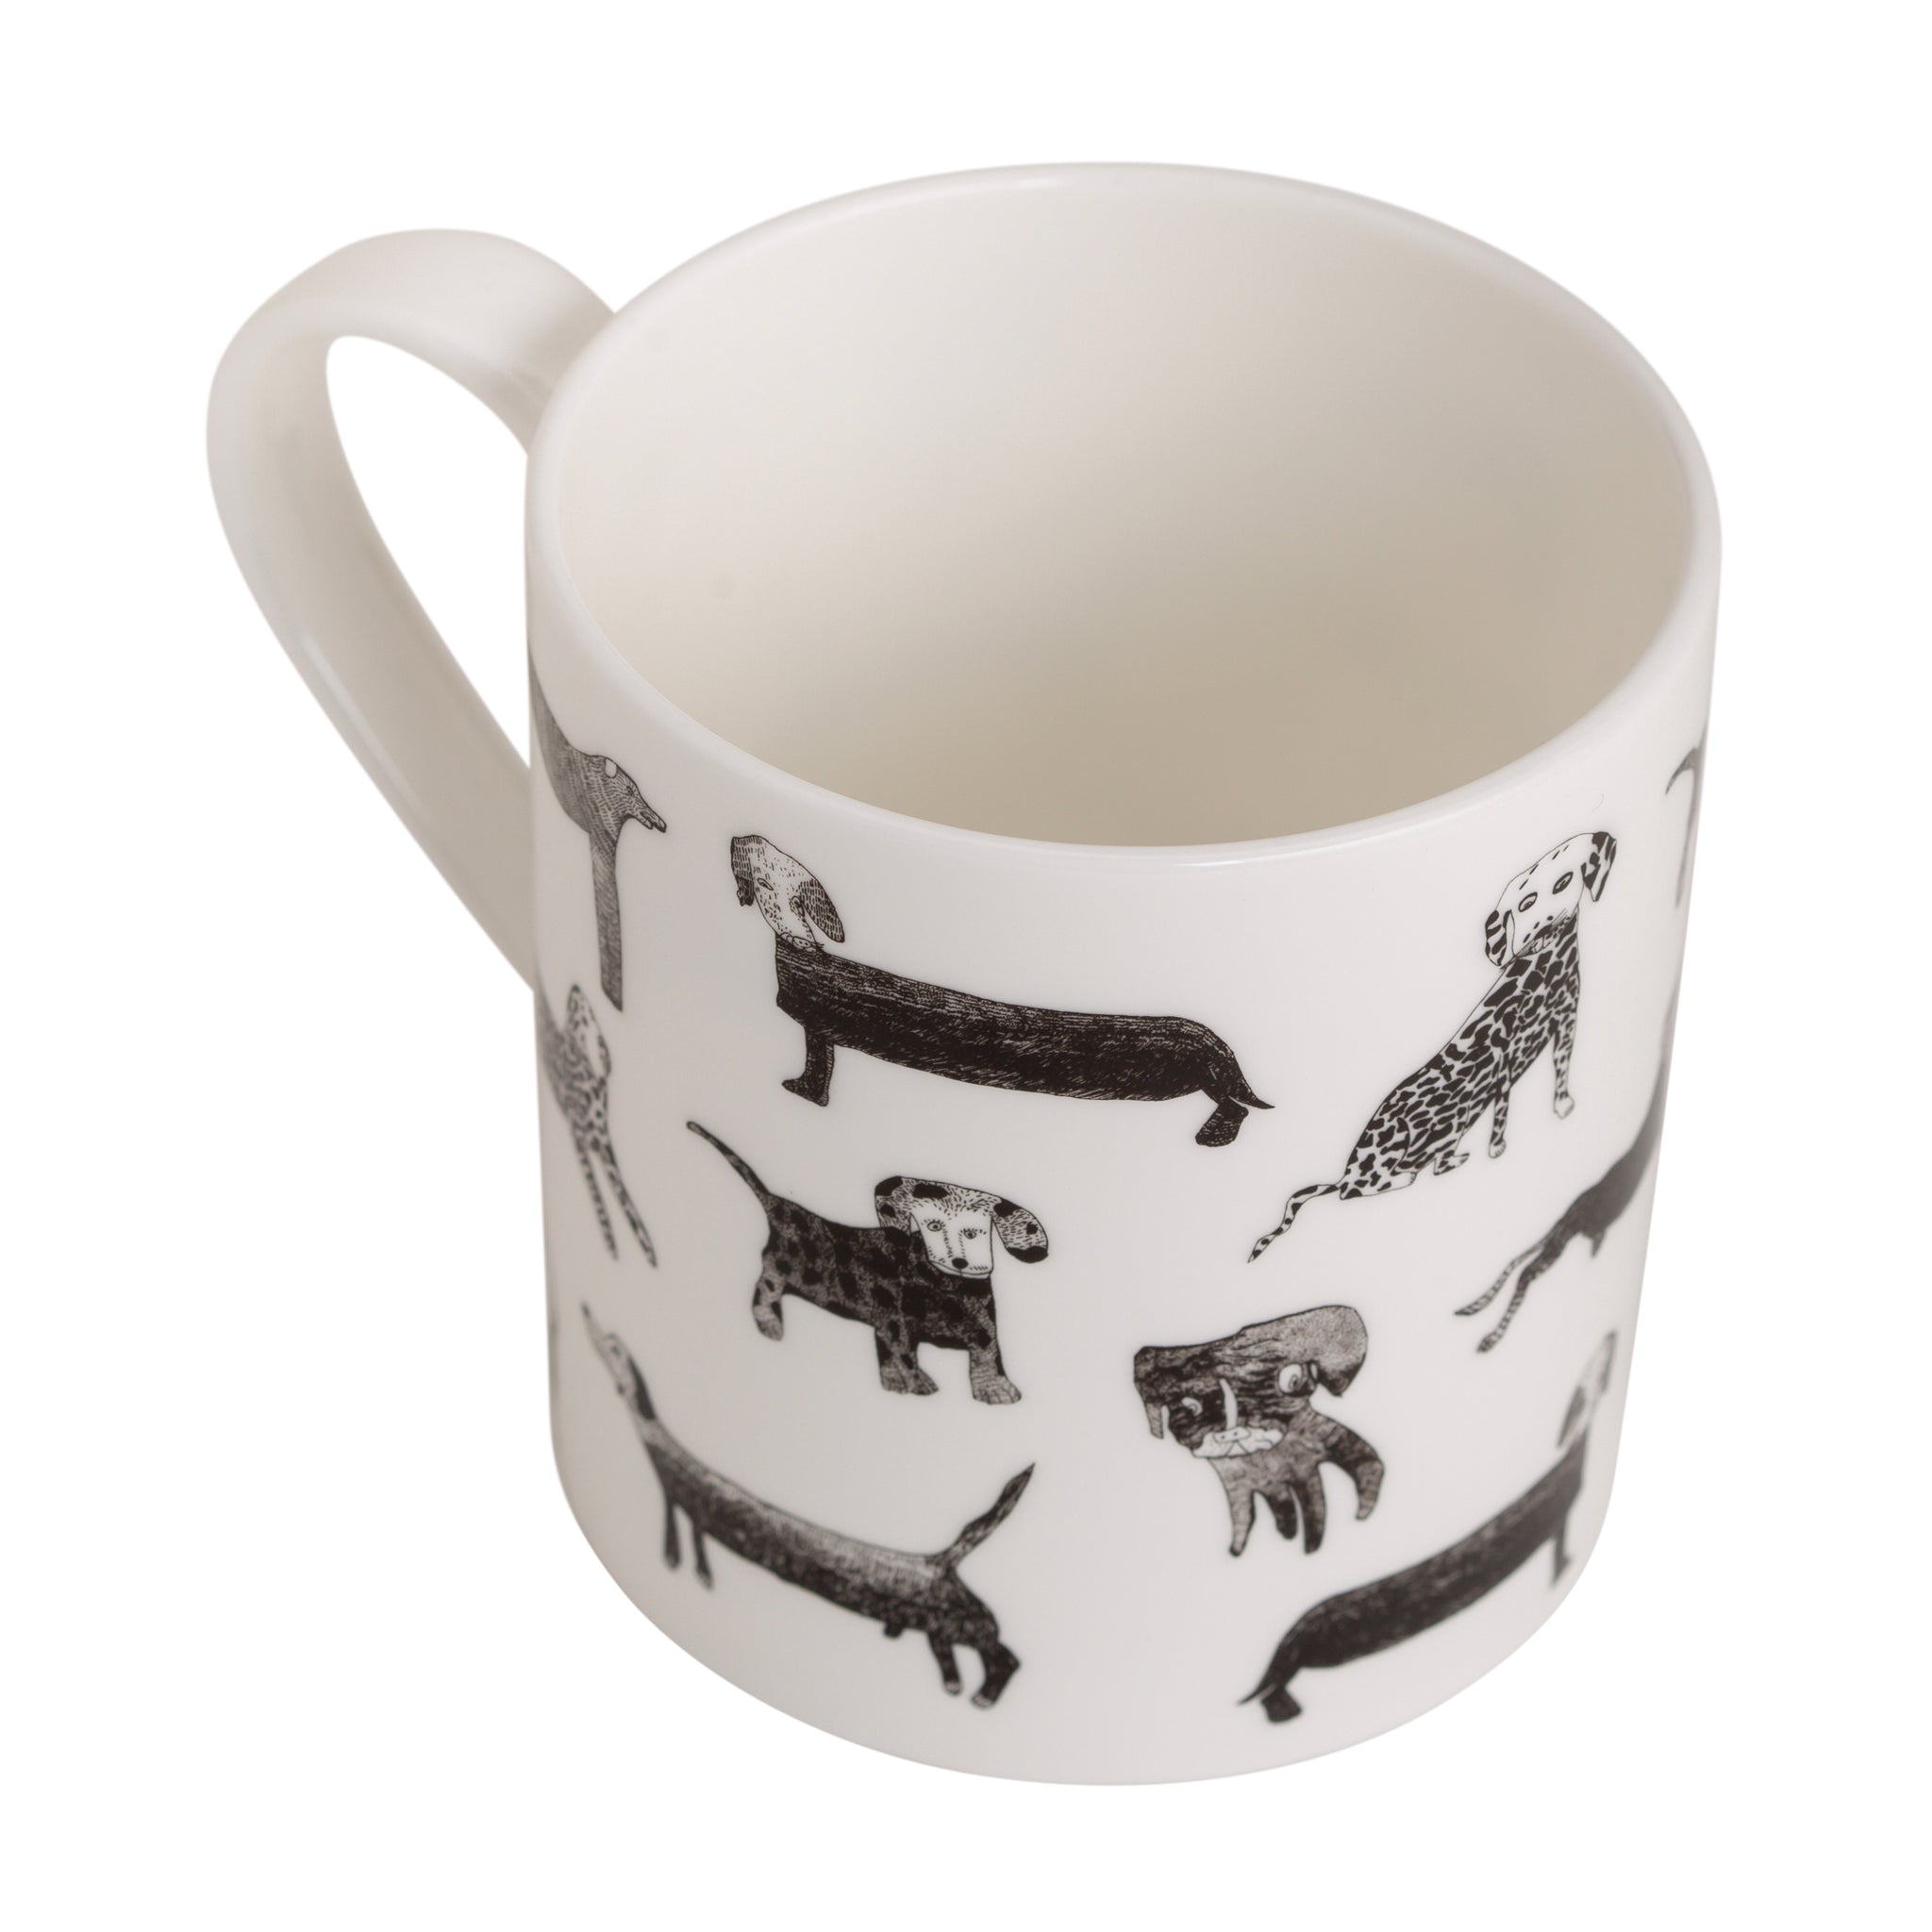 Dogalicious, Fine Bone China Mug with black dog drawings 